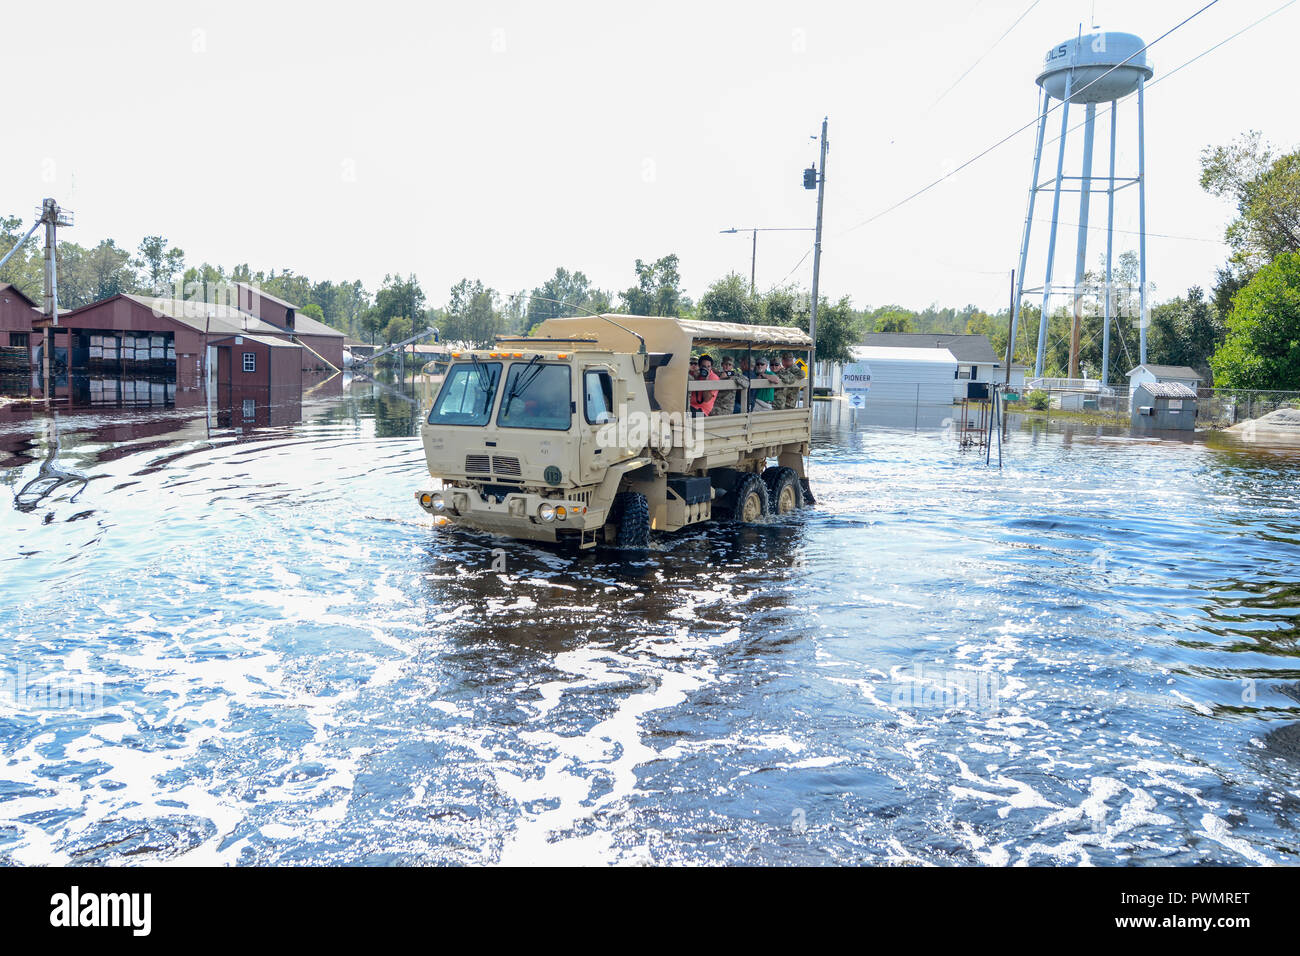 Ein Südcarolina National Guard hohe Wasser Fahrzeug Gouverneur Henry McMaste Schäden vom tropischen Sturm Florenz, die große Teile der nördlichen Küste des Staates September 22, 2018 in Nichols, South Carolina überflutet zu bewerten. Stockfoto